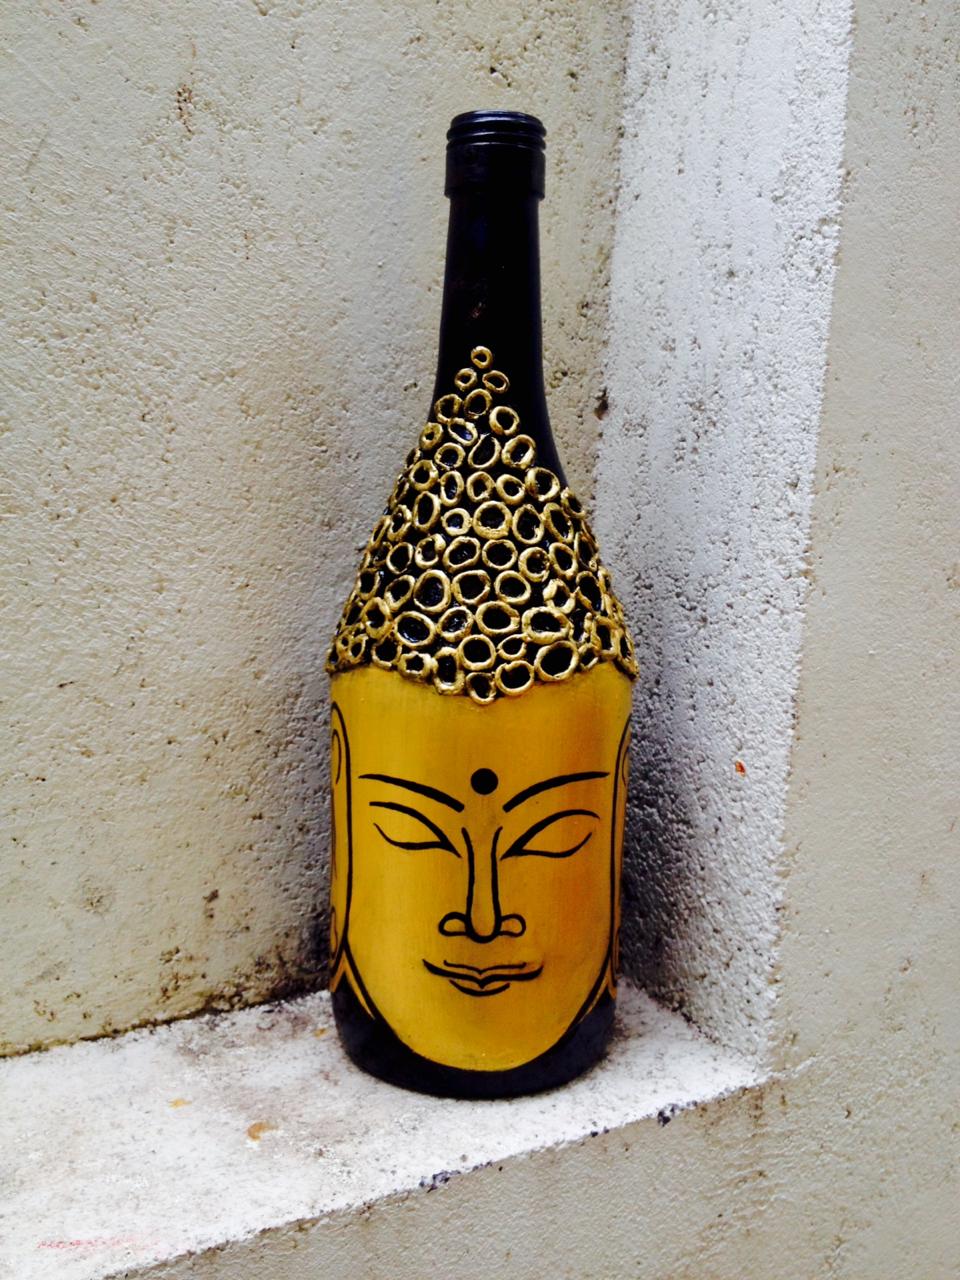 Buy Budha bottle art Online India- India's #1 Creative Marketplace ...